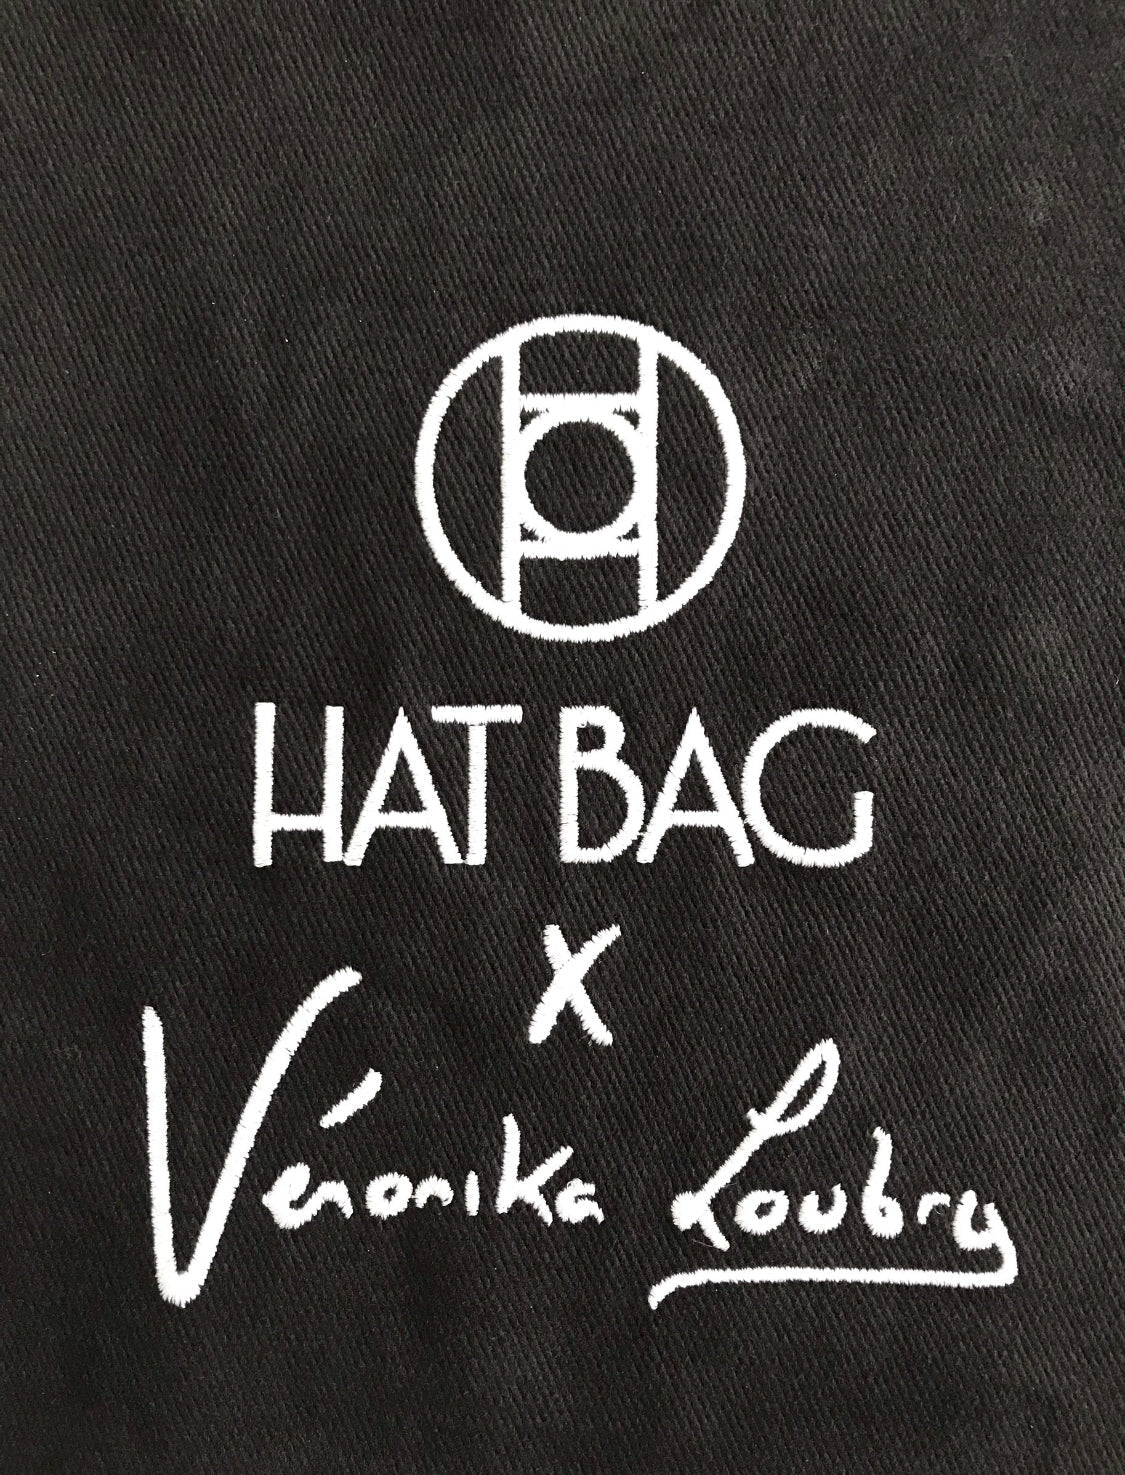 Porte Chapeau Hat Bag "Provence" by Veronika Loubry en cuir marron clair et toile de Jute - hat bag paris